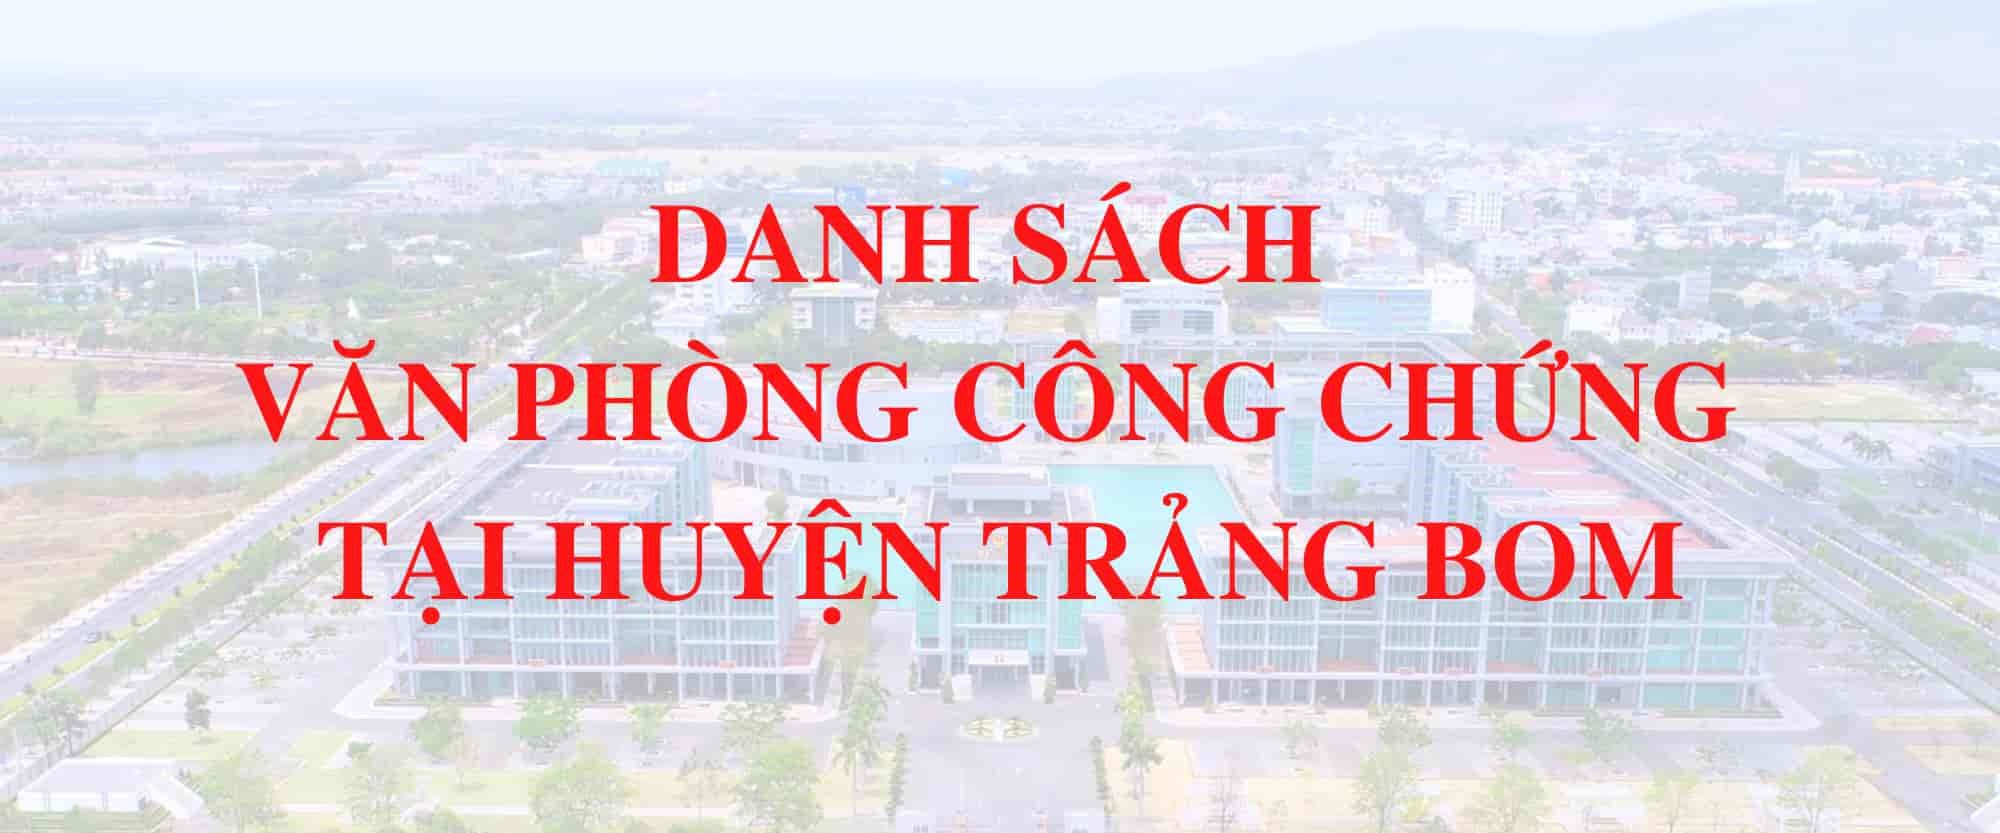 Van Phong Cong Chung Huyen Trang Bom Dong Nai 1